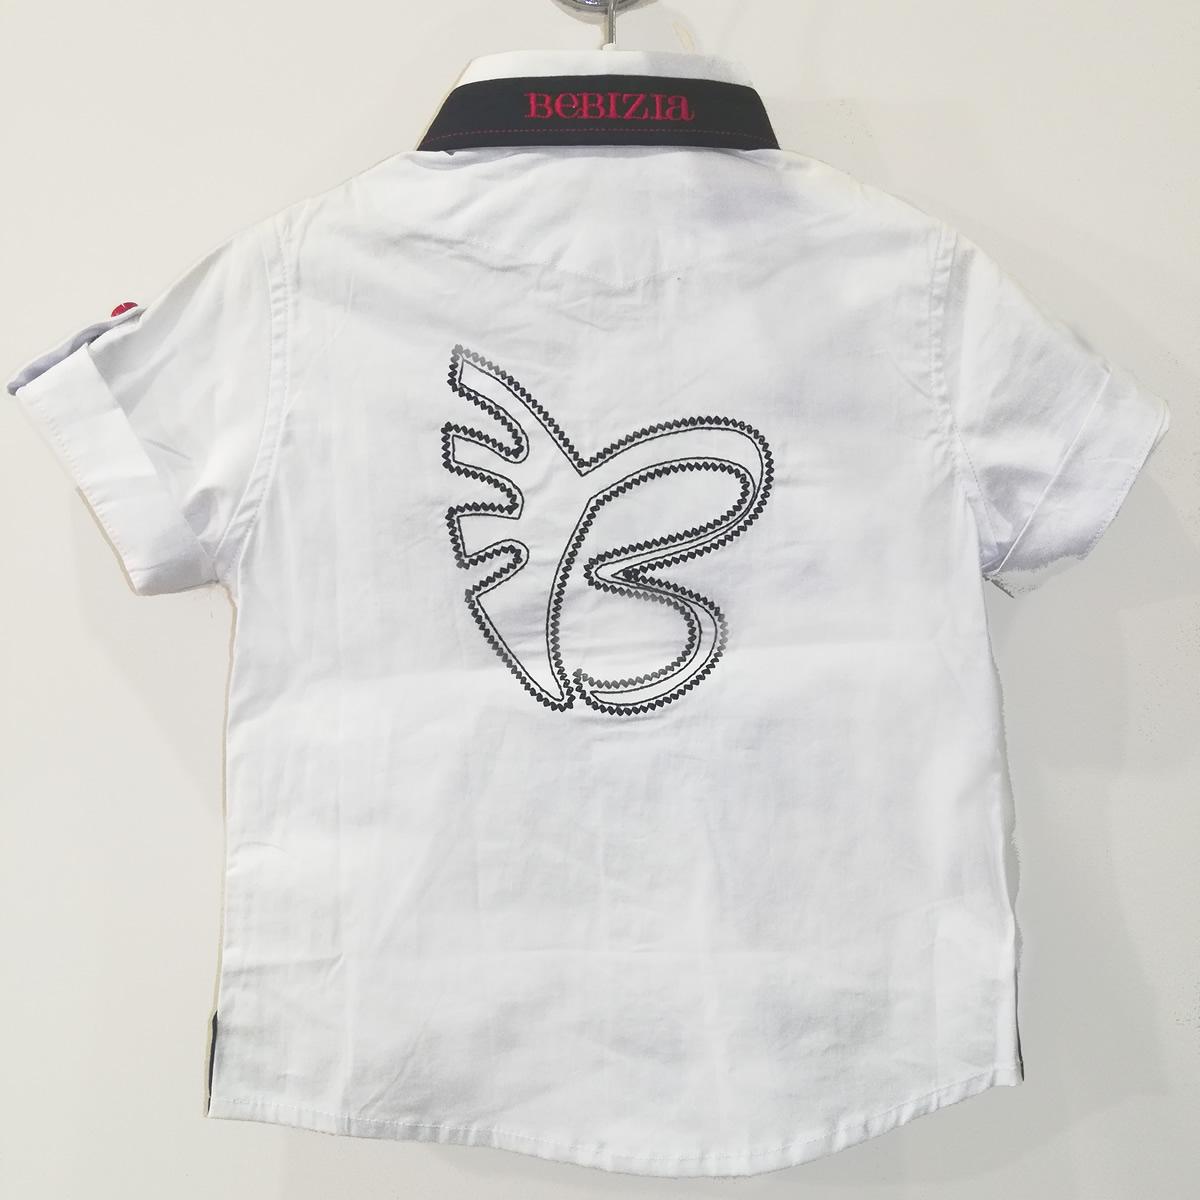 Дитяча сорочка для хлопчика з коротким рукавом, біла (3037), Bebizia